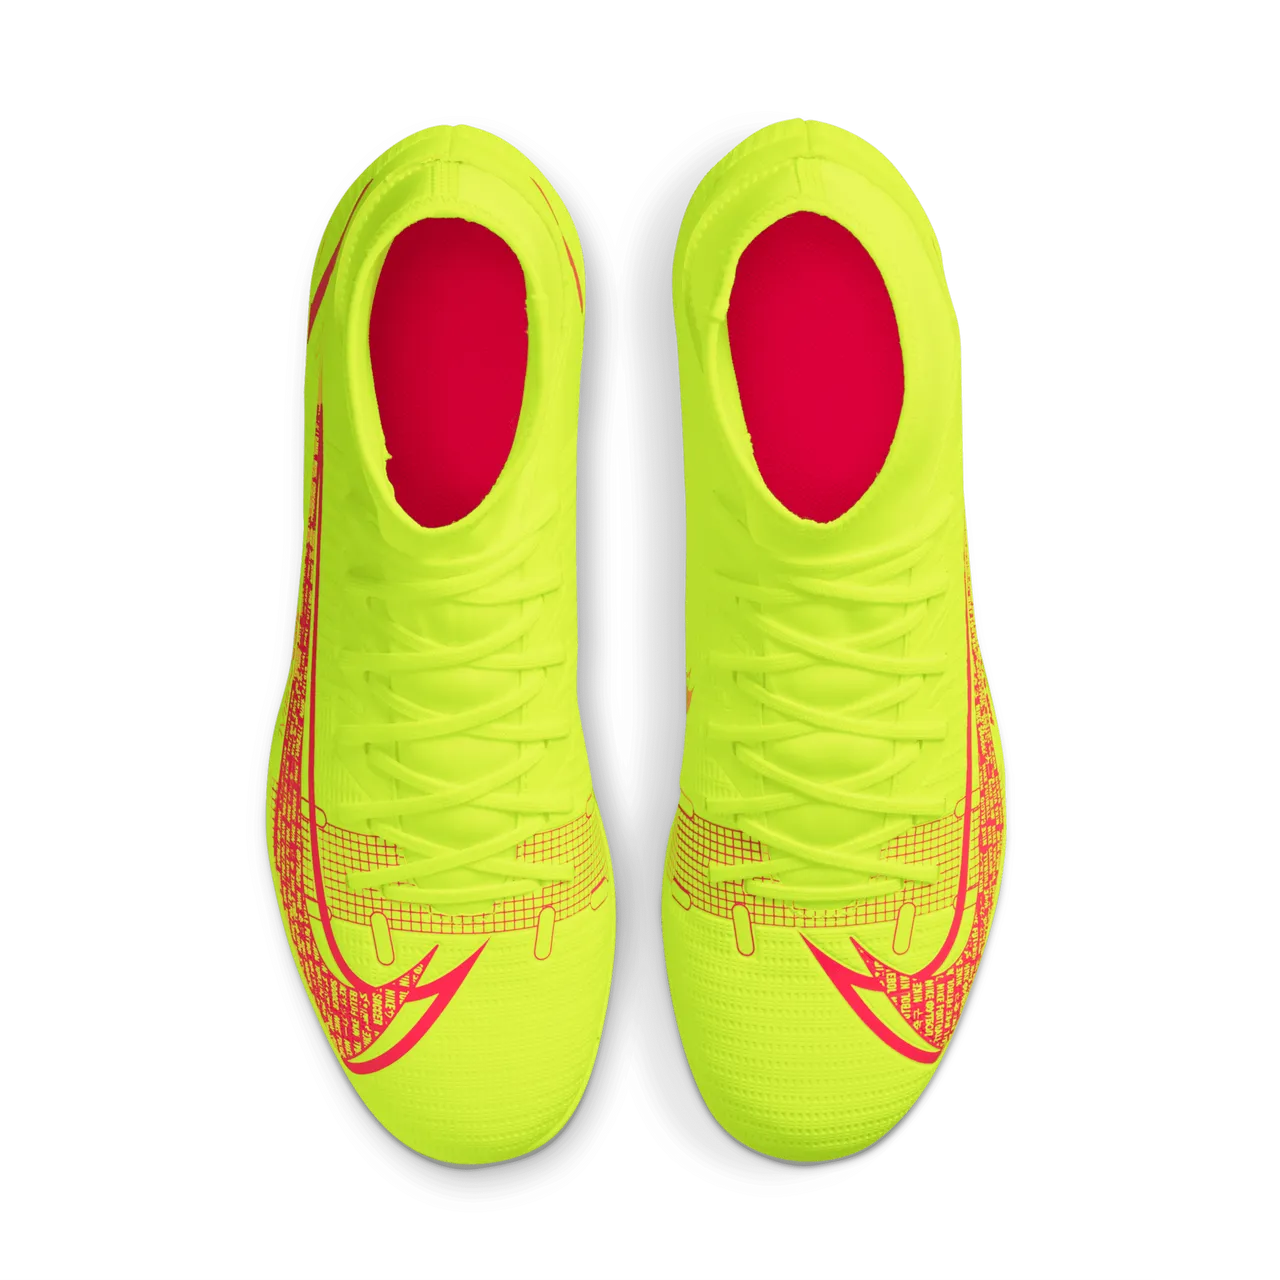 Nike Mercurial Superfly 8 Club MG Fußballschuh für verschiedene Böden - Gelb